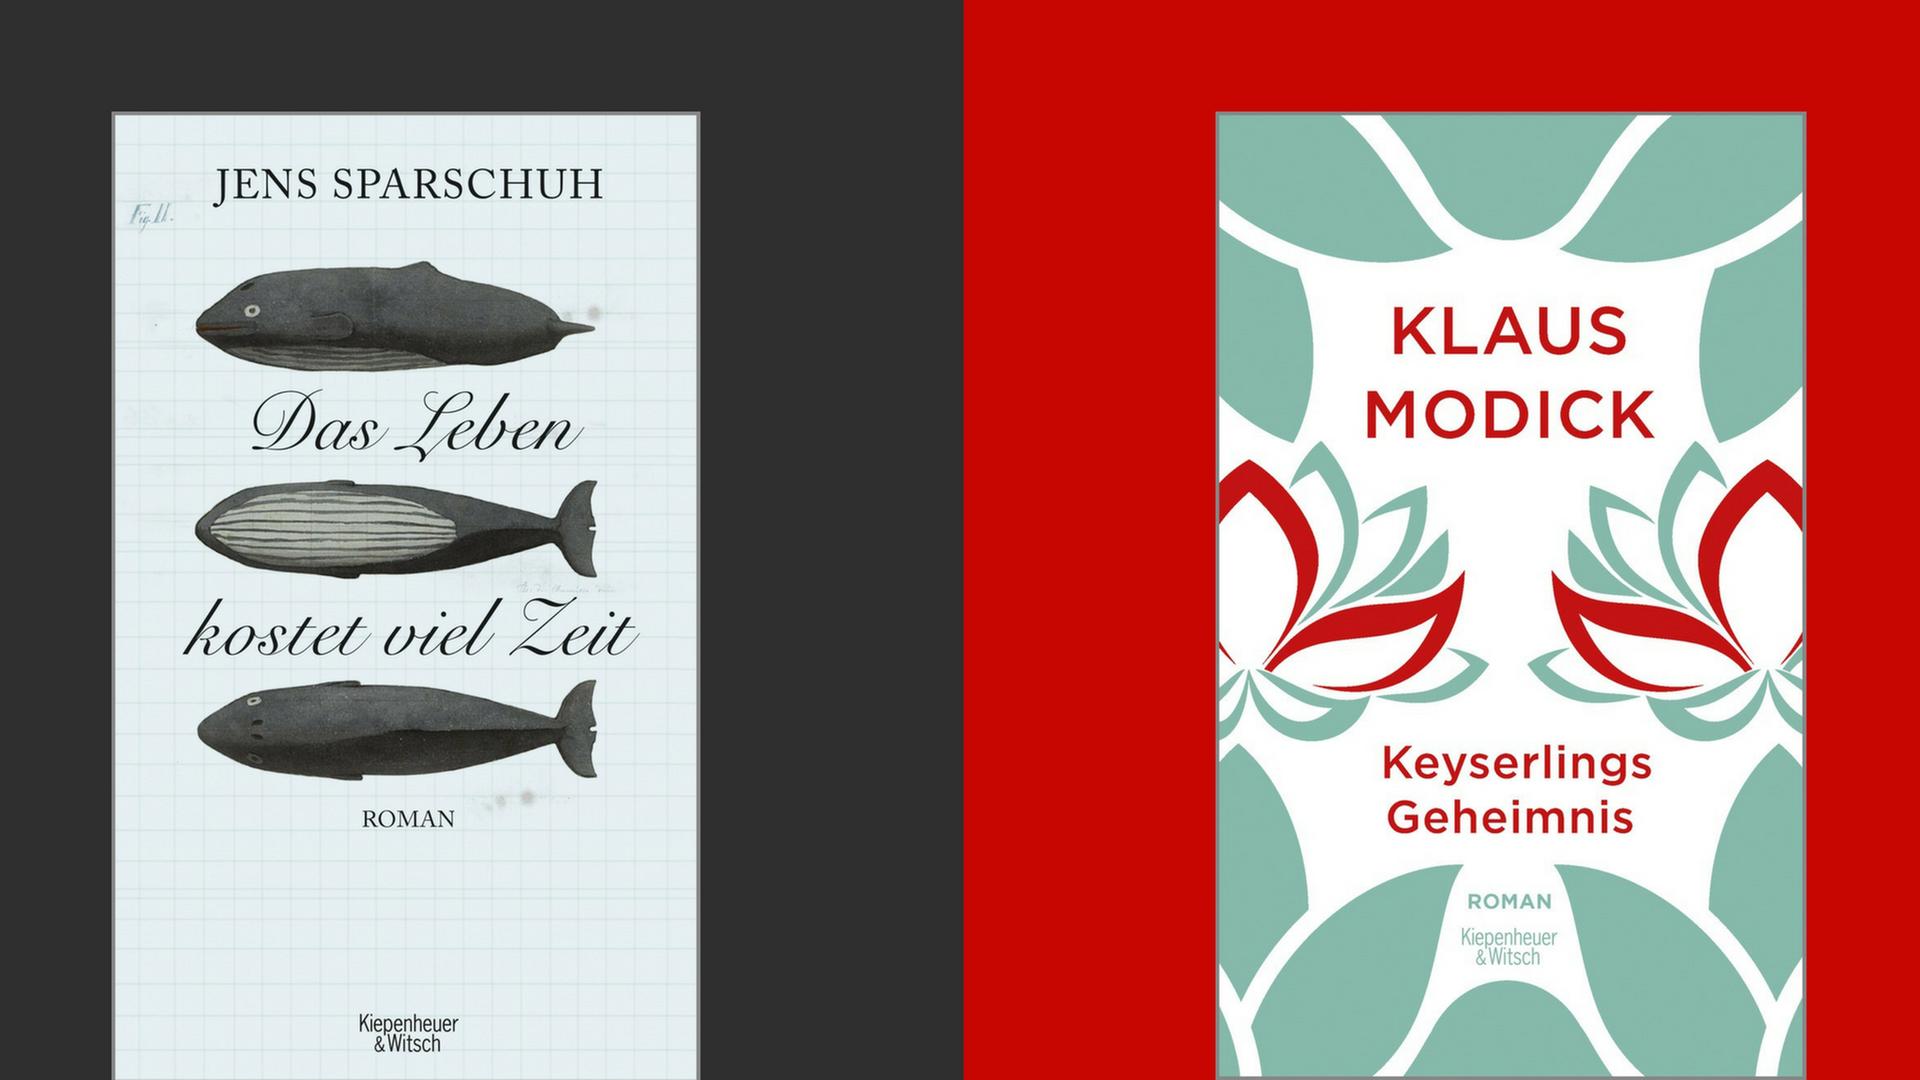 Buchcover: Jens Sparschuh: "Das Leben kostet viel Zeit" und Klaus Modick: "Keyserlings Geheimnis"